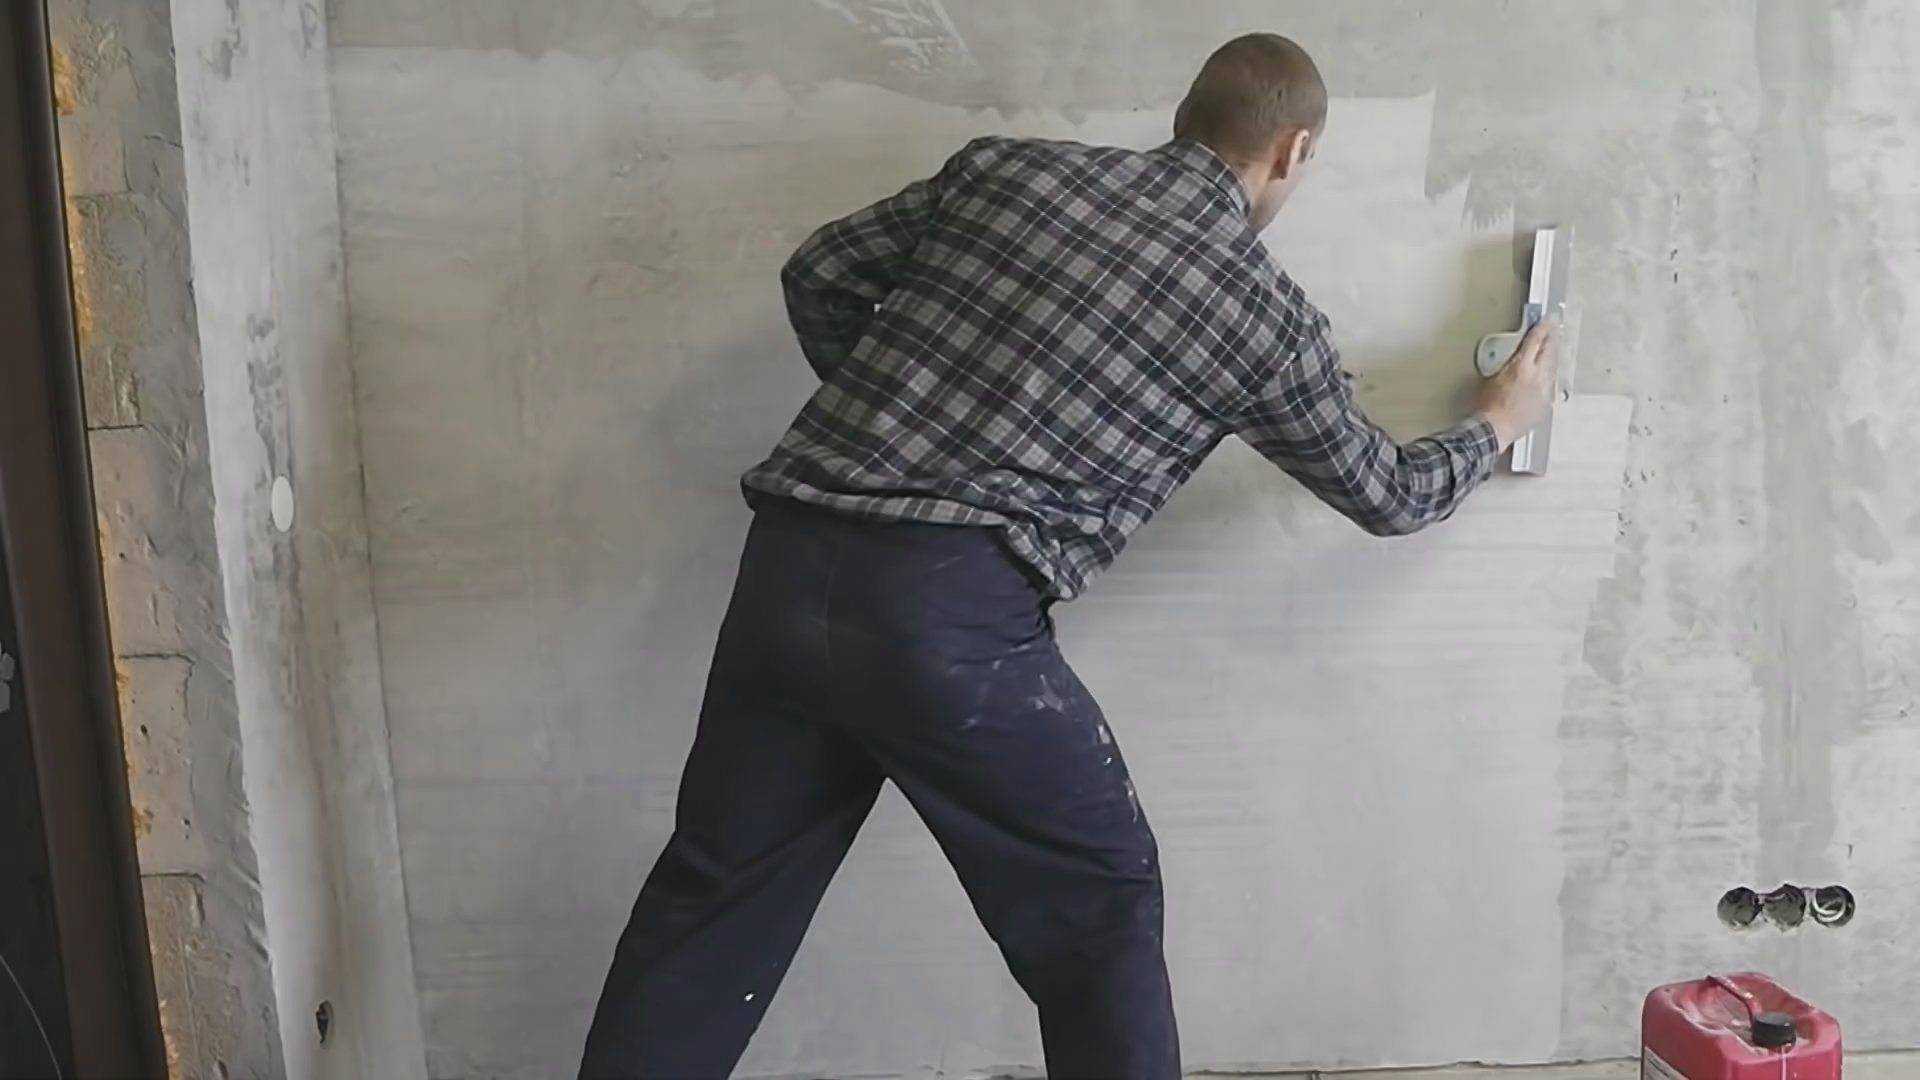 Финишная шпаклевка стен под покраску: виды и применение